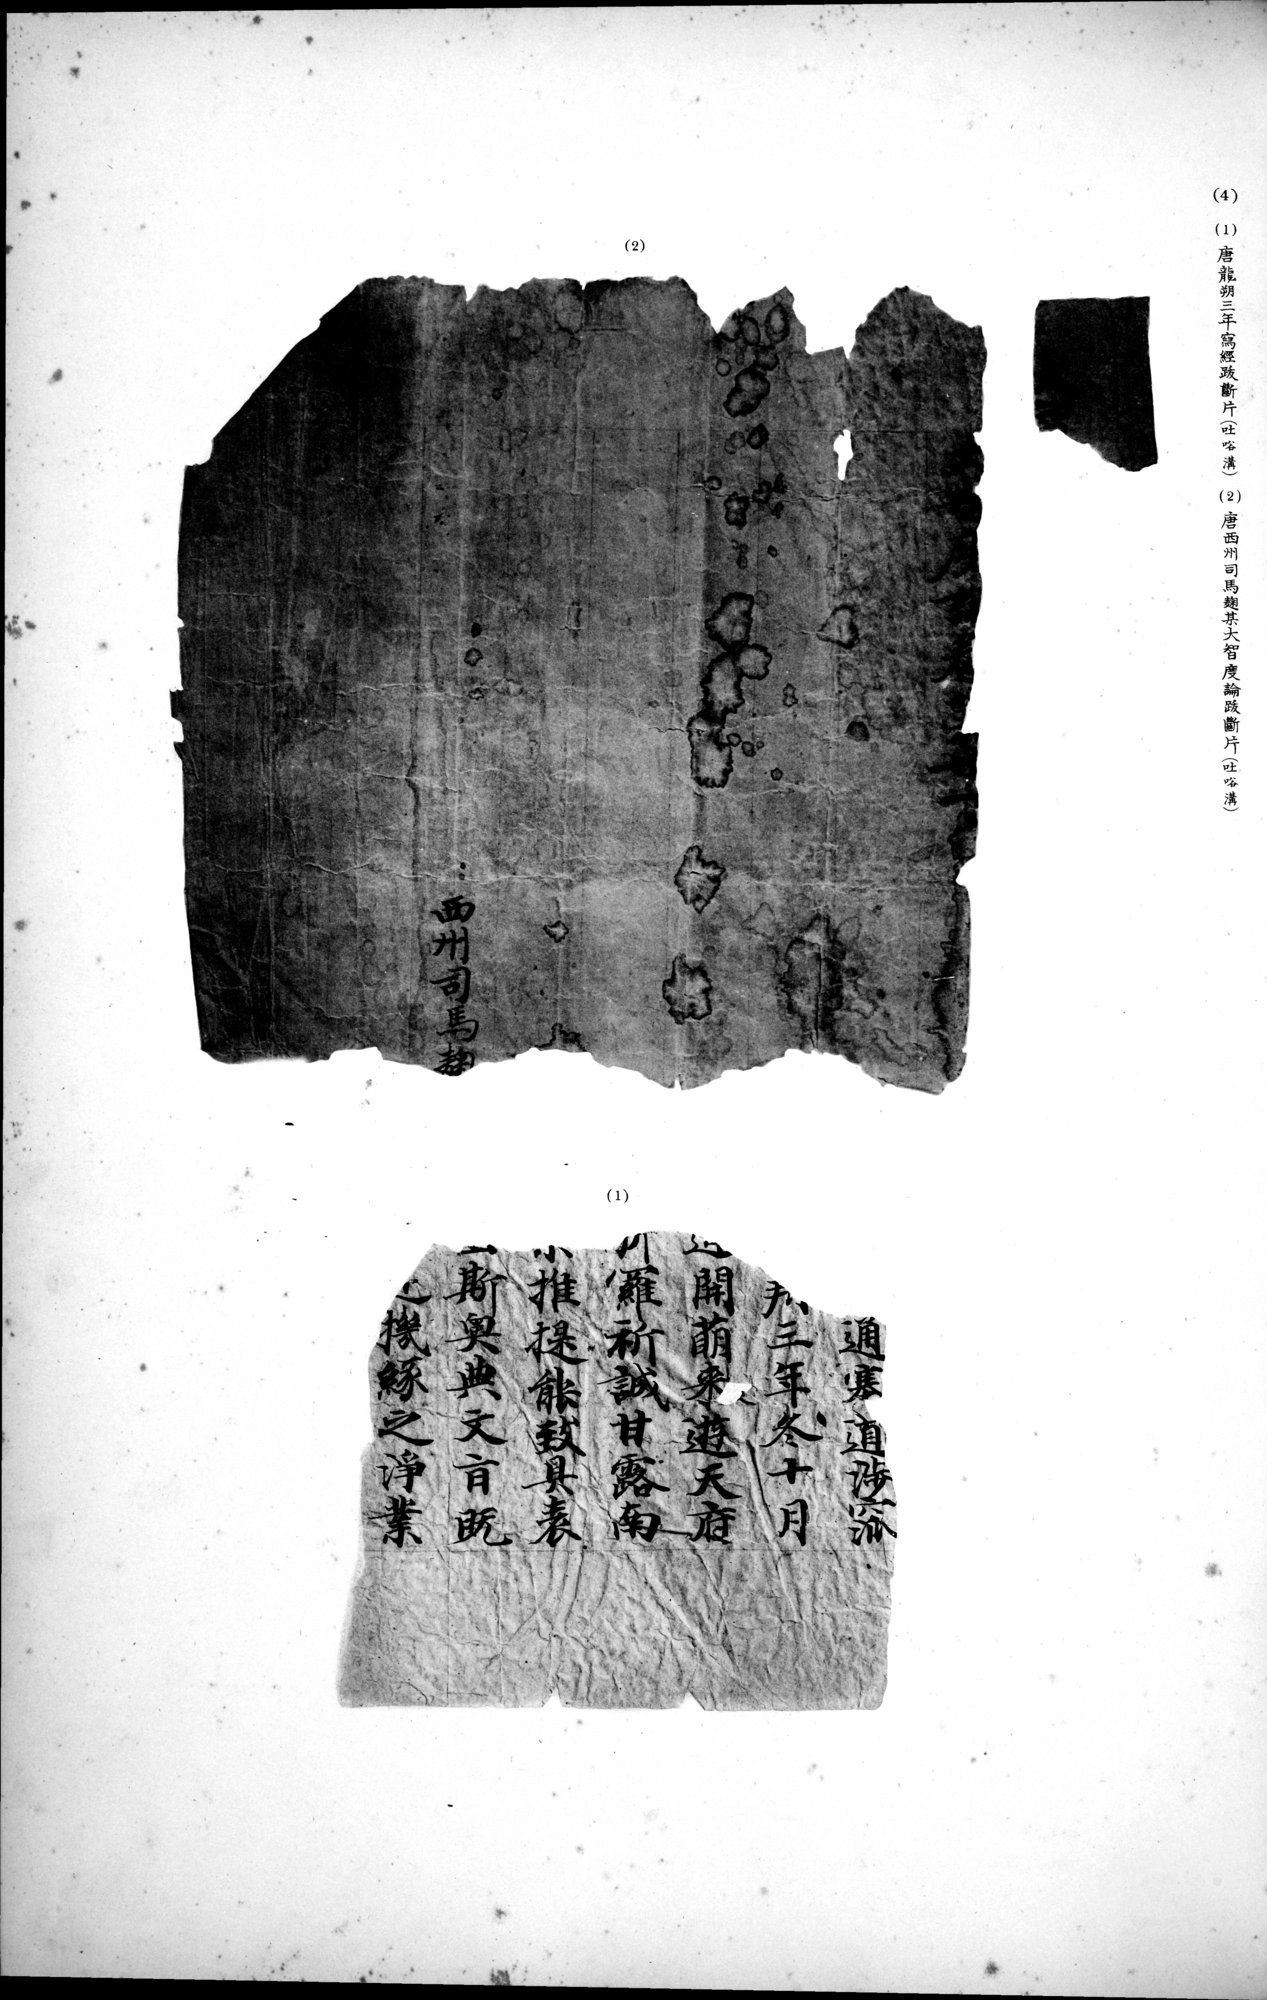 西域考古図譜 : vol.2 / Page 161 (Grayscale High Resolution Image)